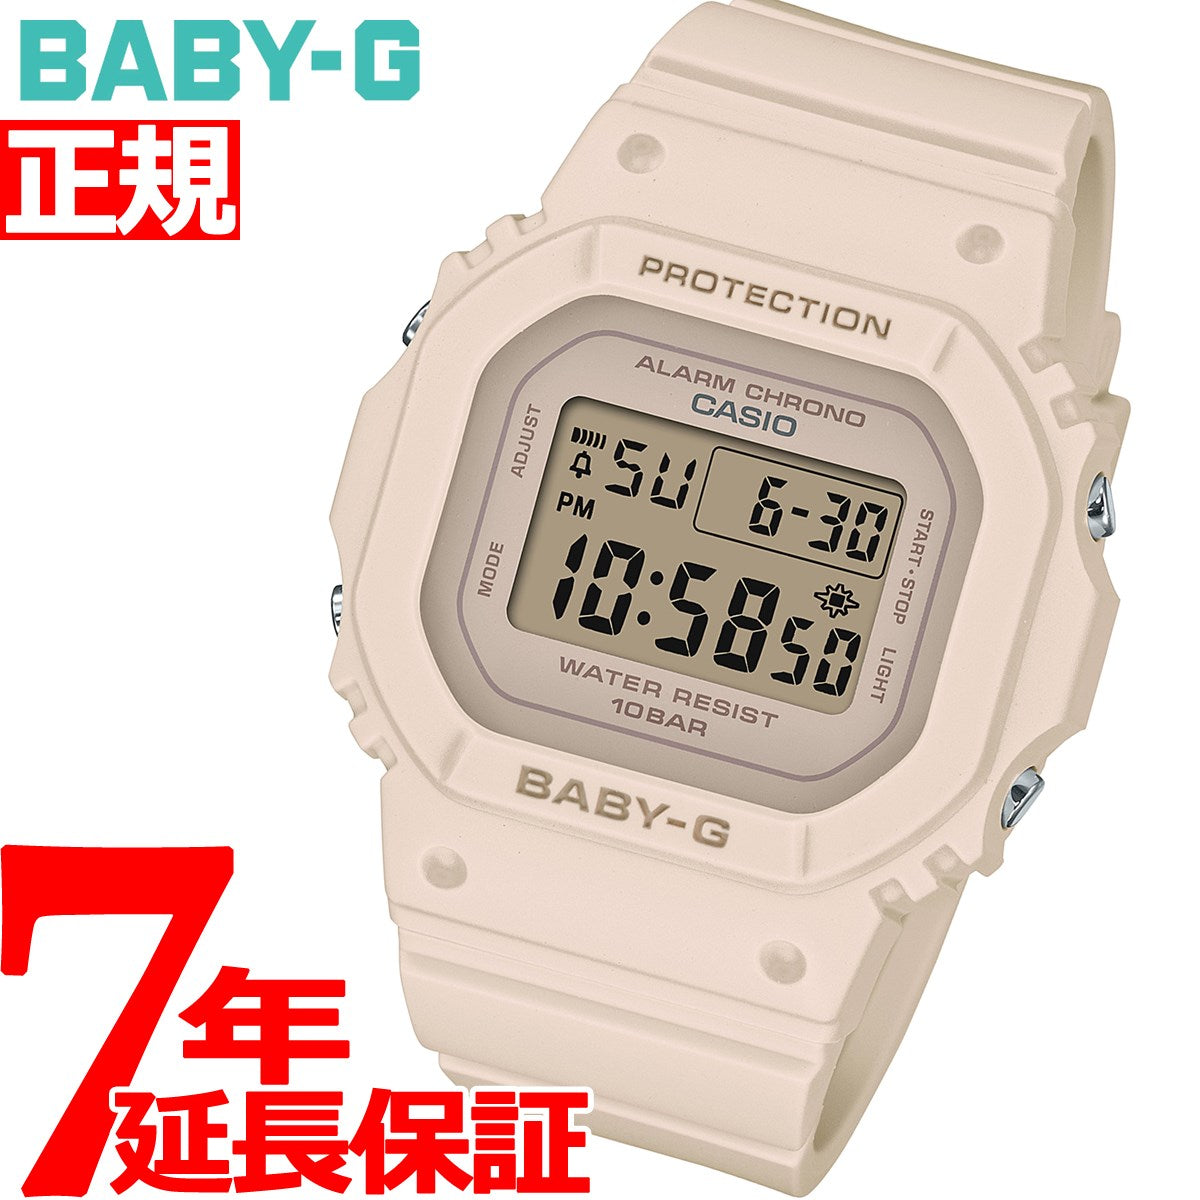 BABY-G ベビーG レディース 時計 カシオ babyg BGD-565-4JF ピンクベージュ